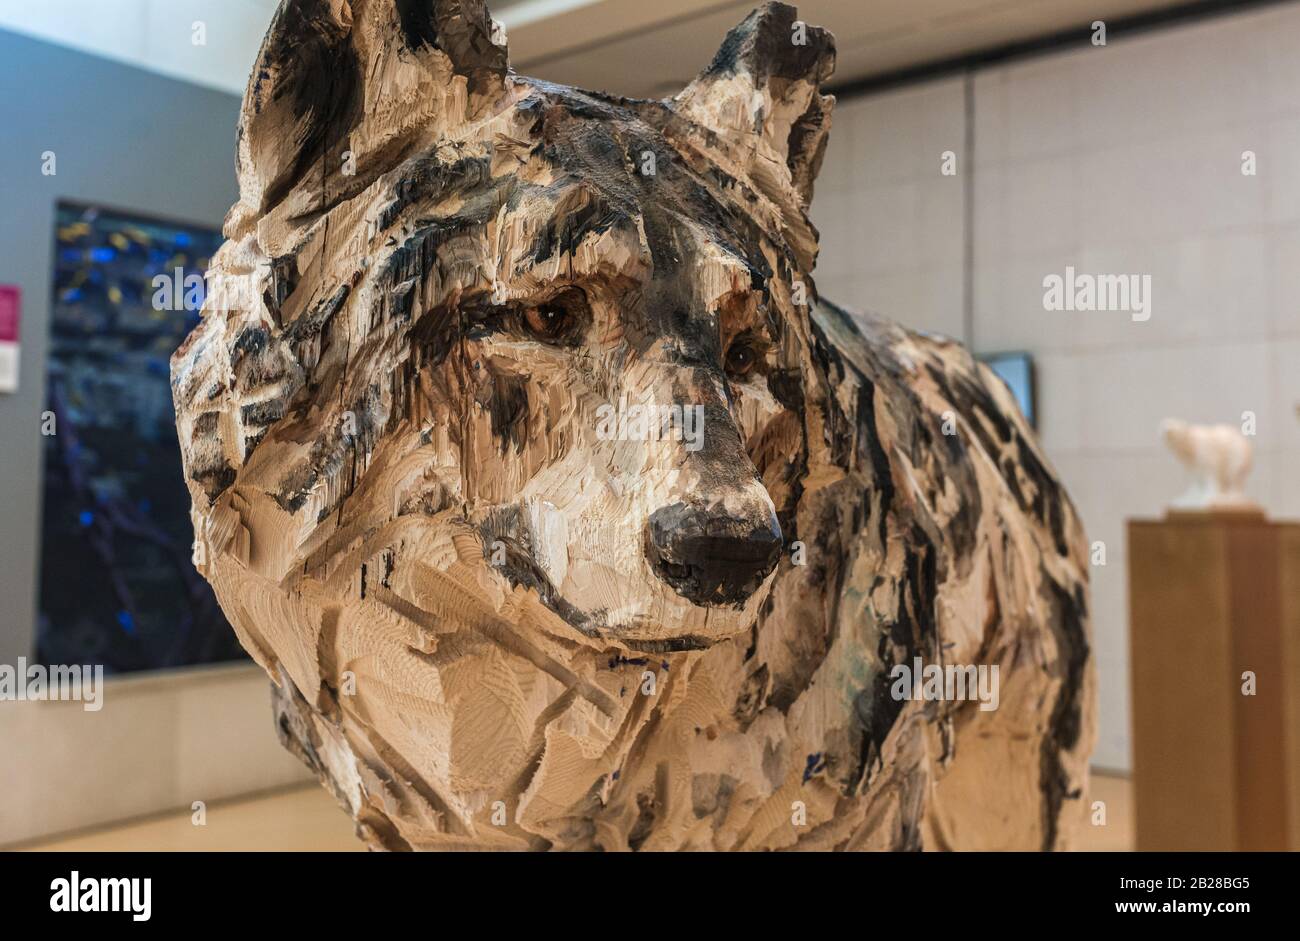 Sculpture en bois de l'artiste de Chainsaw Jurgen Lingl Rebetez exposé au musée scientifique interactif de trente, italie, décembre 2019 Banque D'Images